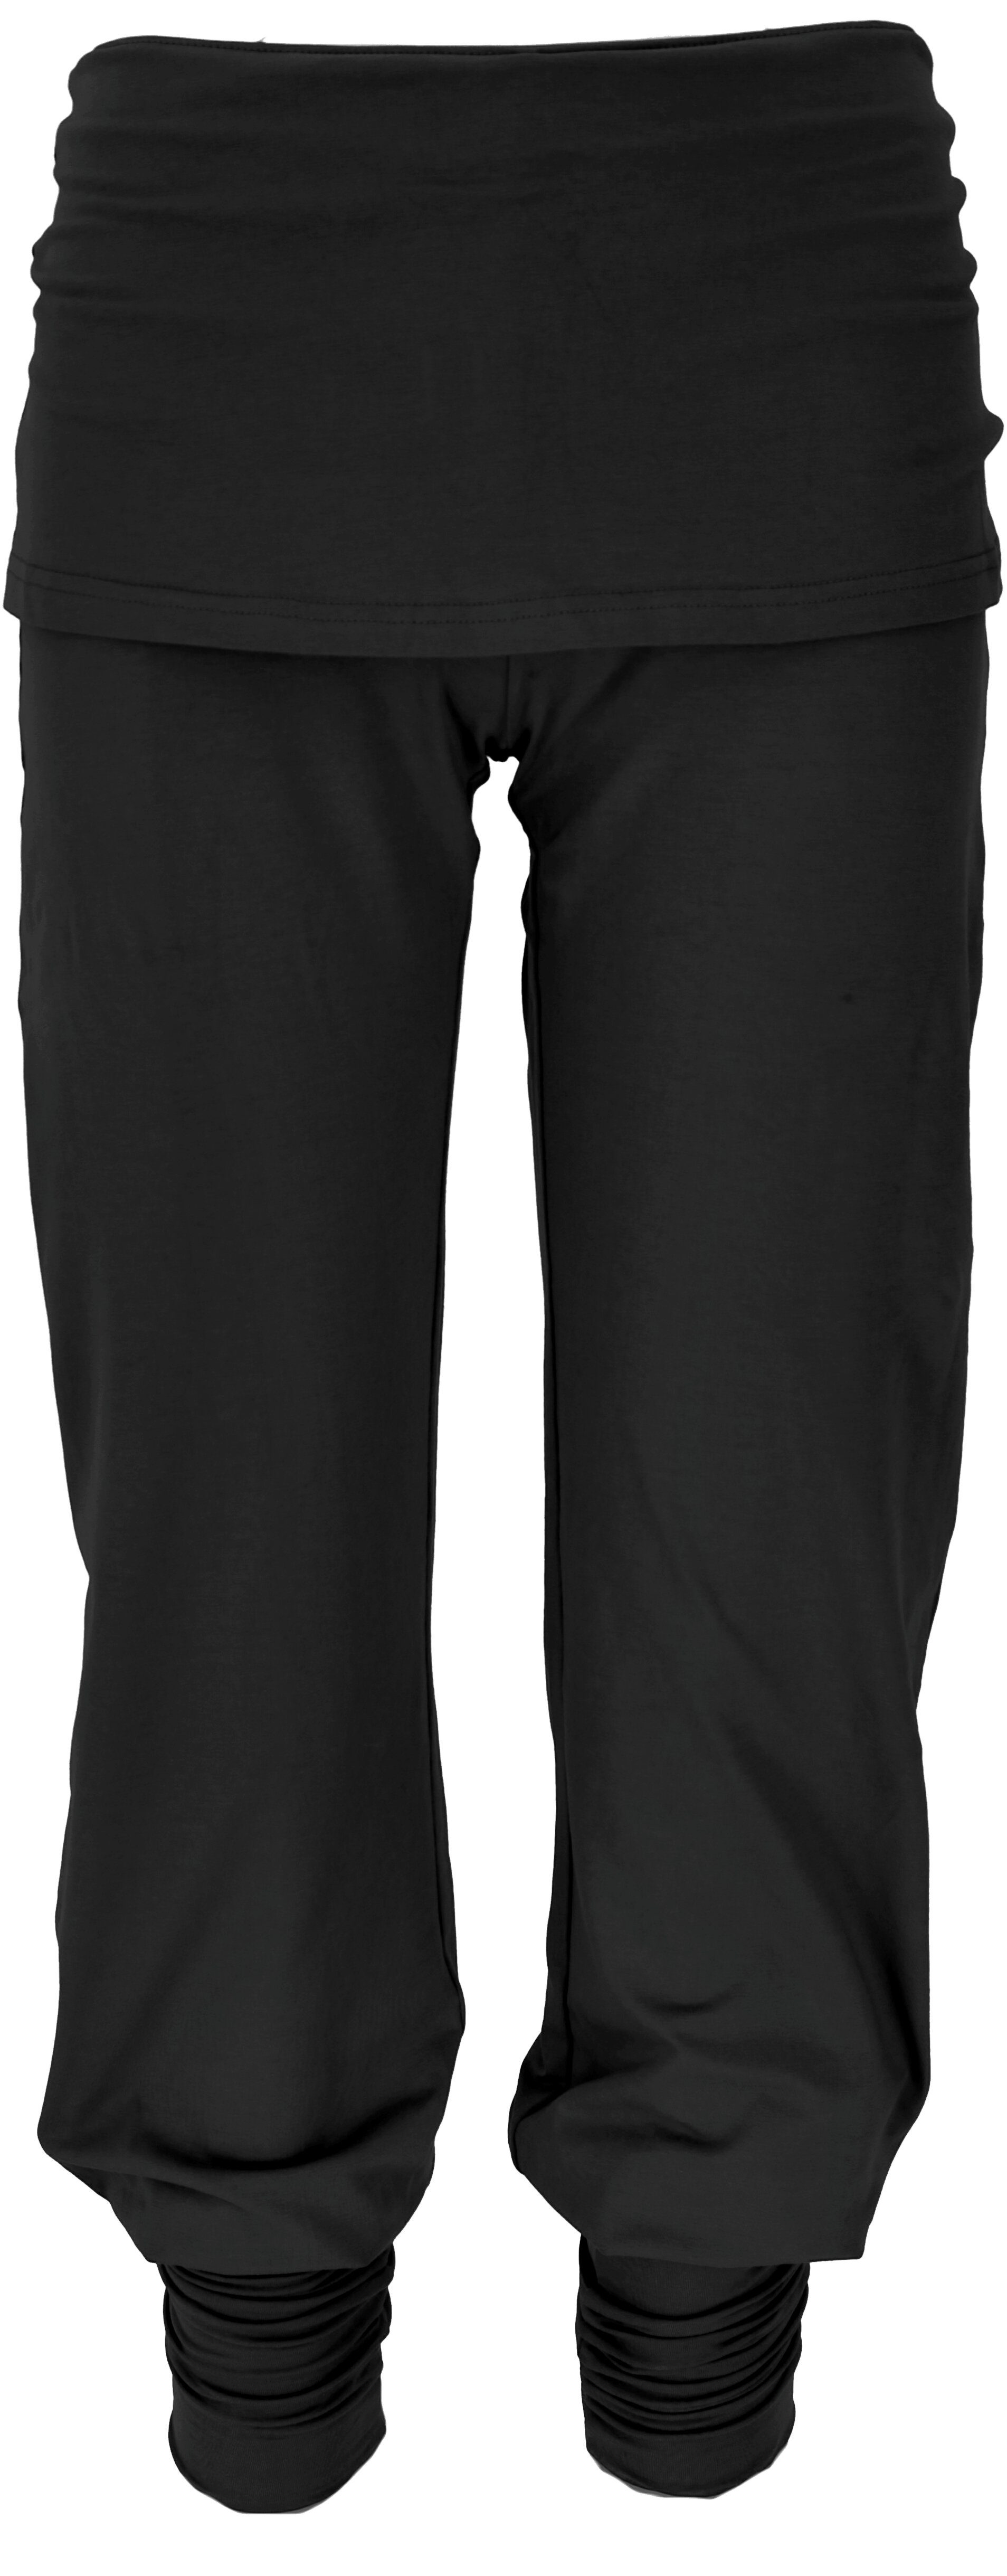 Guru-Shop Relaxhose Yoga-Hose mit Minirock Bio-Qualität - Bekleidung alternative schwarz in